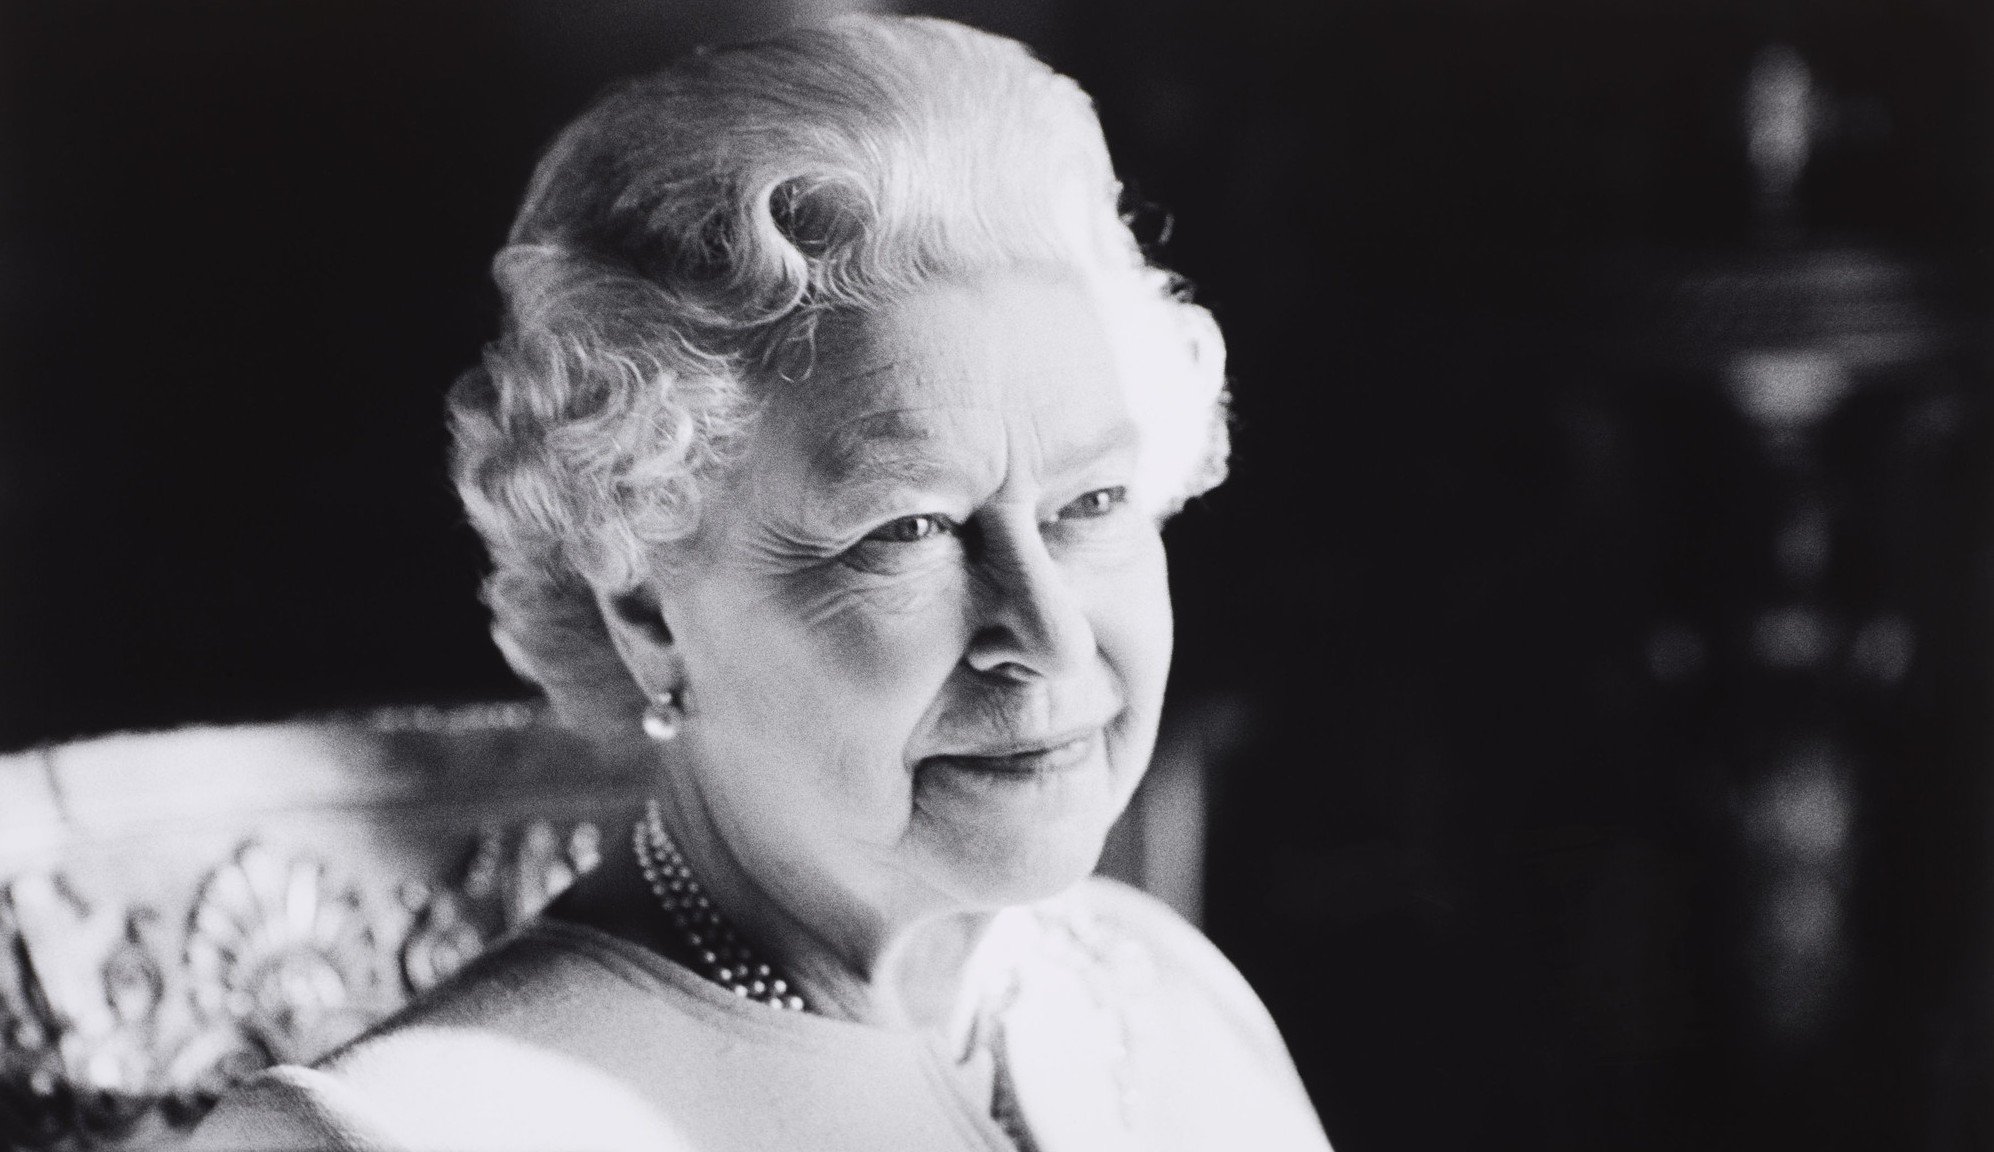 Hino oficial do Reino Unido passará por mudanças após morte da rainha Elizabeth II